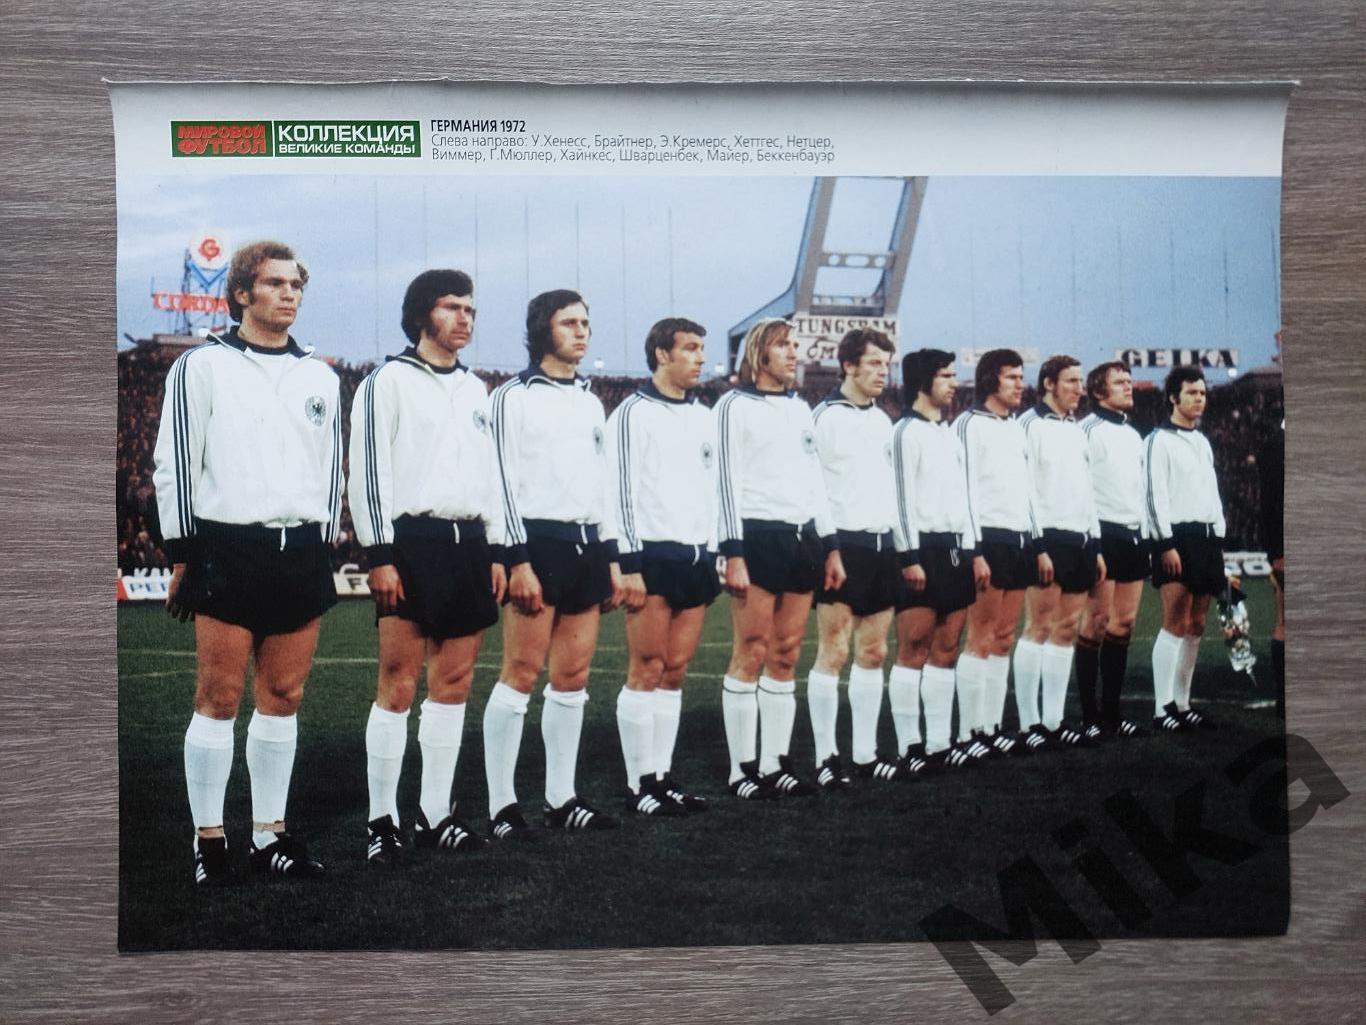 Из журнала Мировой футбол - постер Германия